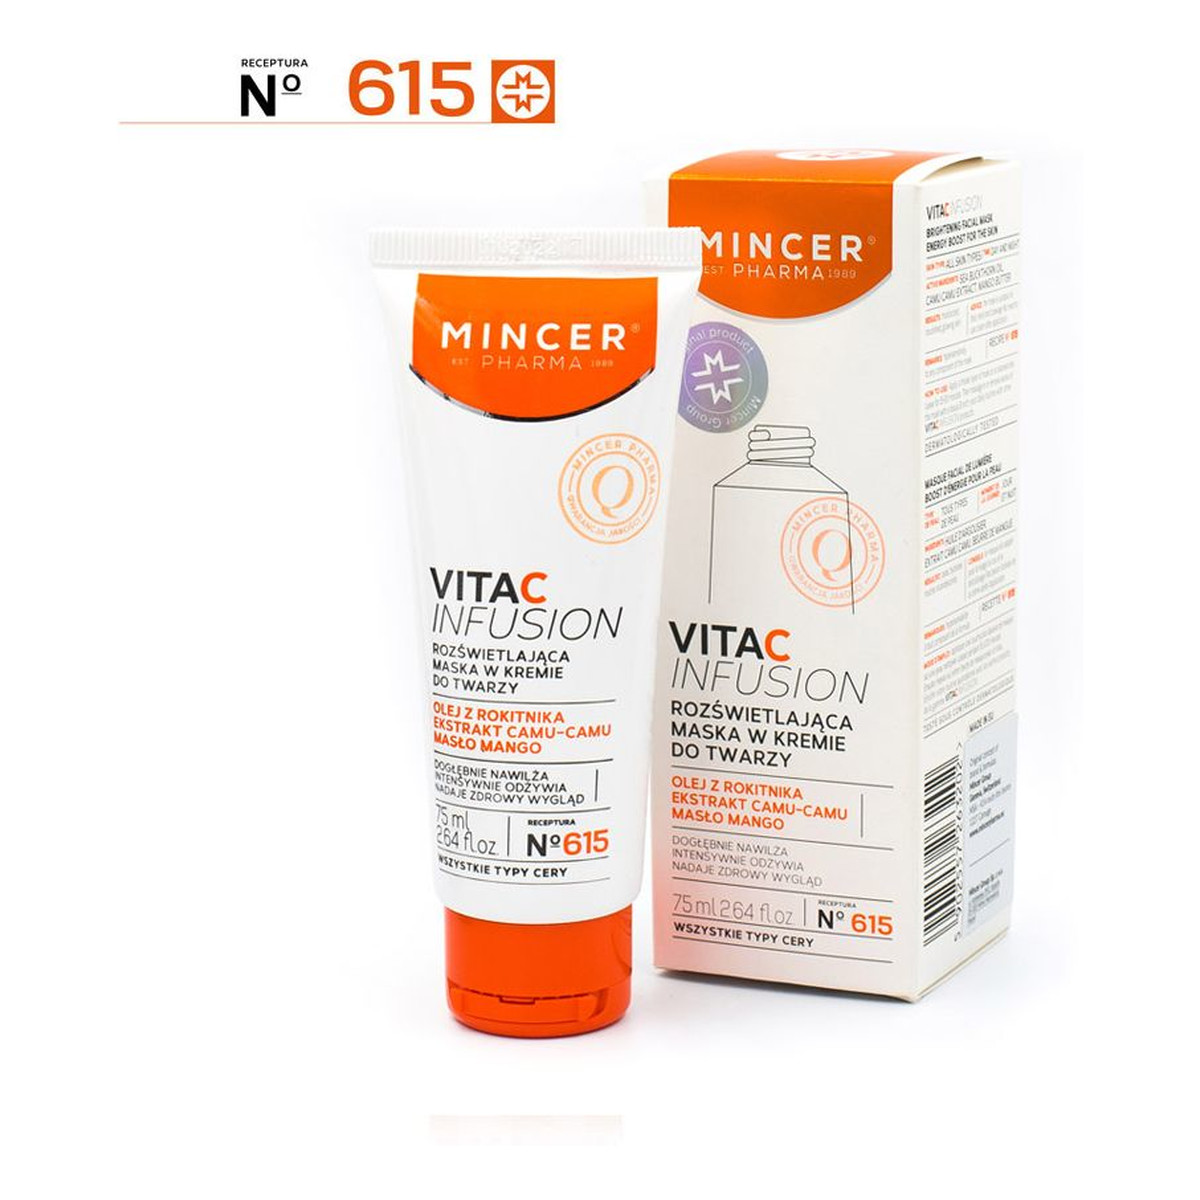 Mincer Pharma Vita C Infusion Rozświetlająca maska do twarzy w kremie 615 75ml